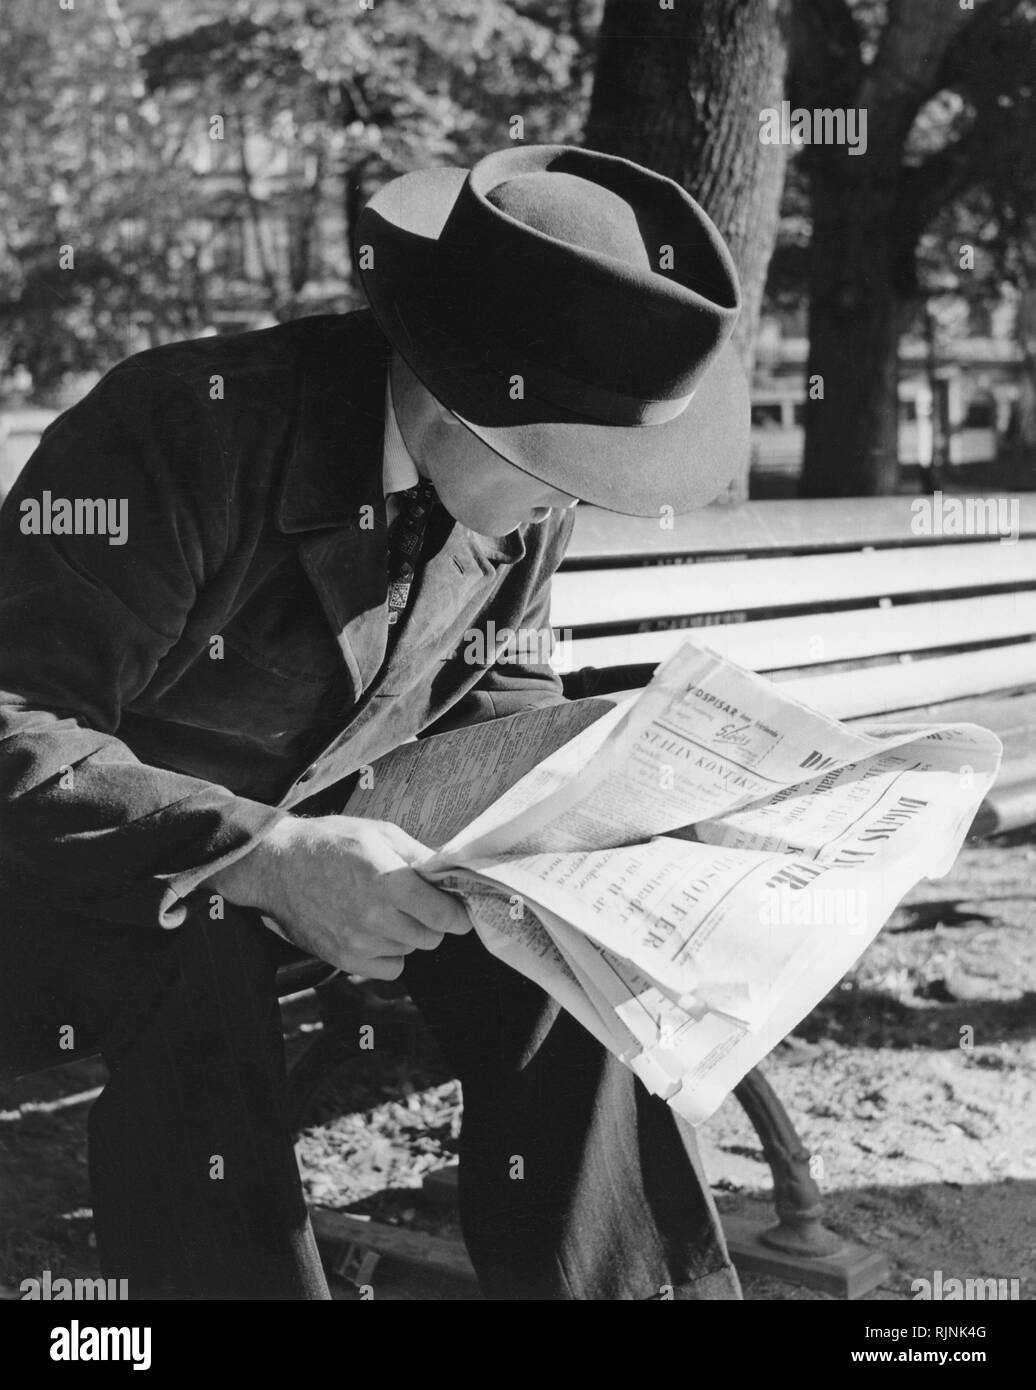 Hat la mode dans les années 1950. Un homme porte un type Fedora hat. Un bord souple et froissé généralement longitudinalement, et pincé près de l'avant des deux côtés. Il est assis sur un banc, lisant le journal. ref 2190 Banque D'Images